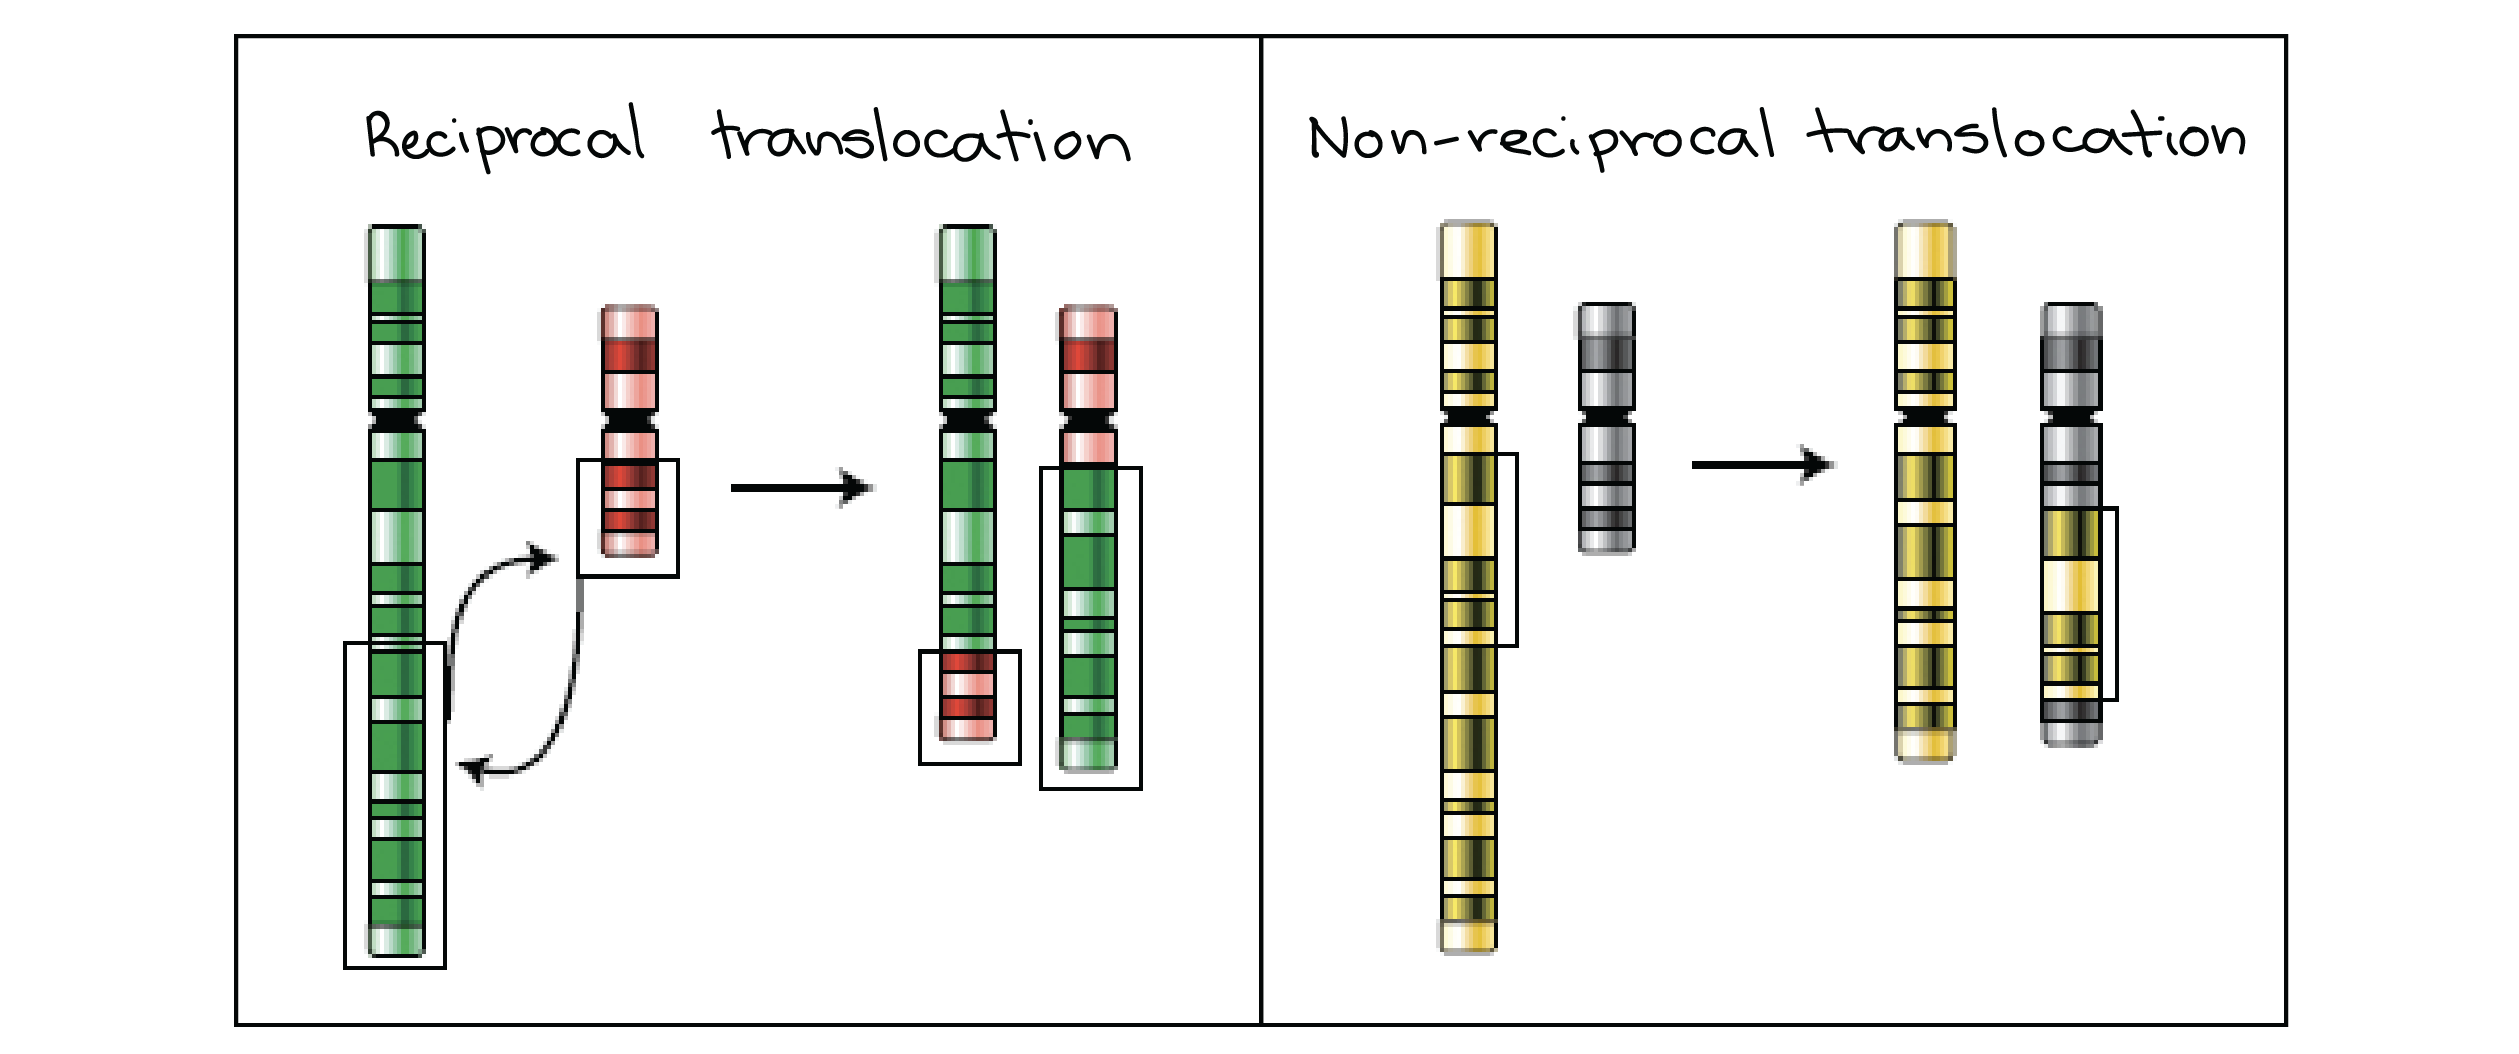 Diagrama da representação esquemática das translocações recíprocas e não recíprocas.

Translocação recíproca: troca de fragmentos entre dois cromossomos não homólogos. Nenhum material genético se perde, mas os cromossomos resultantes são híbridos, cada um contendo segmentos encontrados normalmente  em um cromossomo diferente.

Translocação não recíproca: um fragmento é removido de um cromossomo doador e inserido em um cromossomo receptor. O cromossomo doador perde uma região, enquanto que o cromossomo receptor ganha uma região normalmente não encontrada nesse cromossomo.